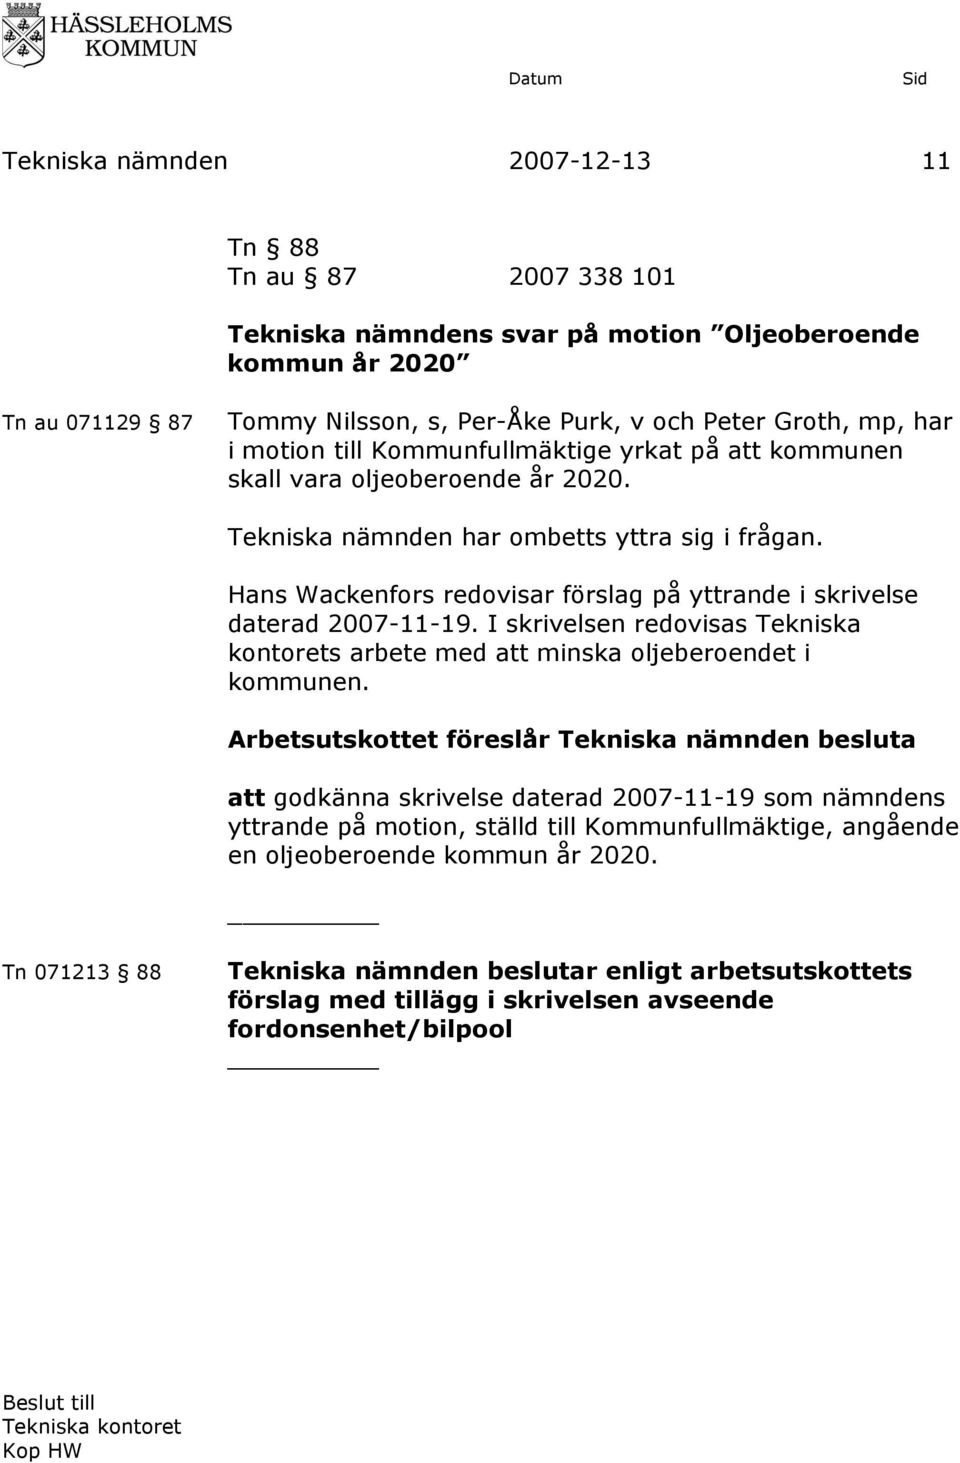 Hans Wackenfors redovisar förslag på yttrande i skrivelse daterad 2007-11-19. I skrivelsen redovisas Tekniska kontorets arbete med att minska oljeberoendet i kommunen.